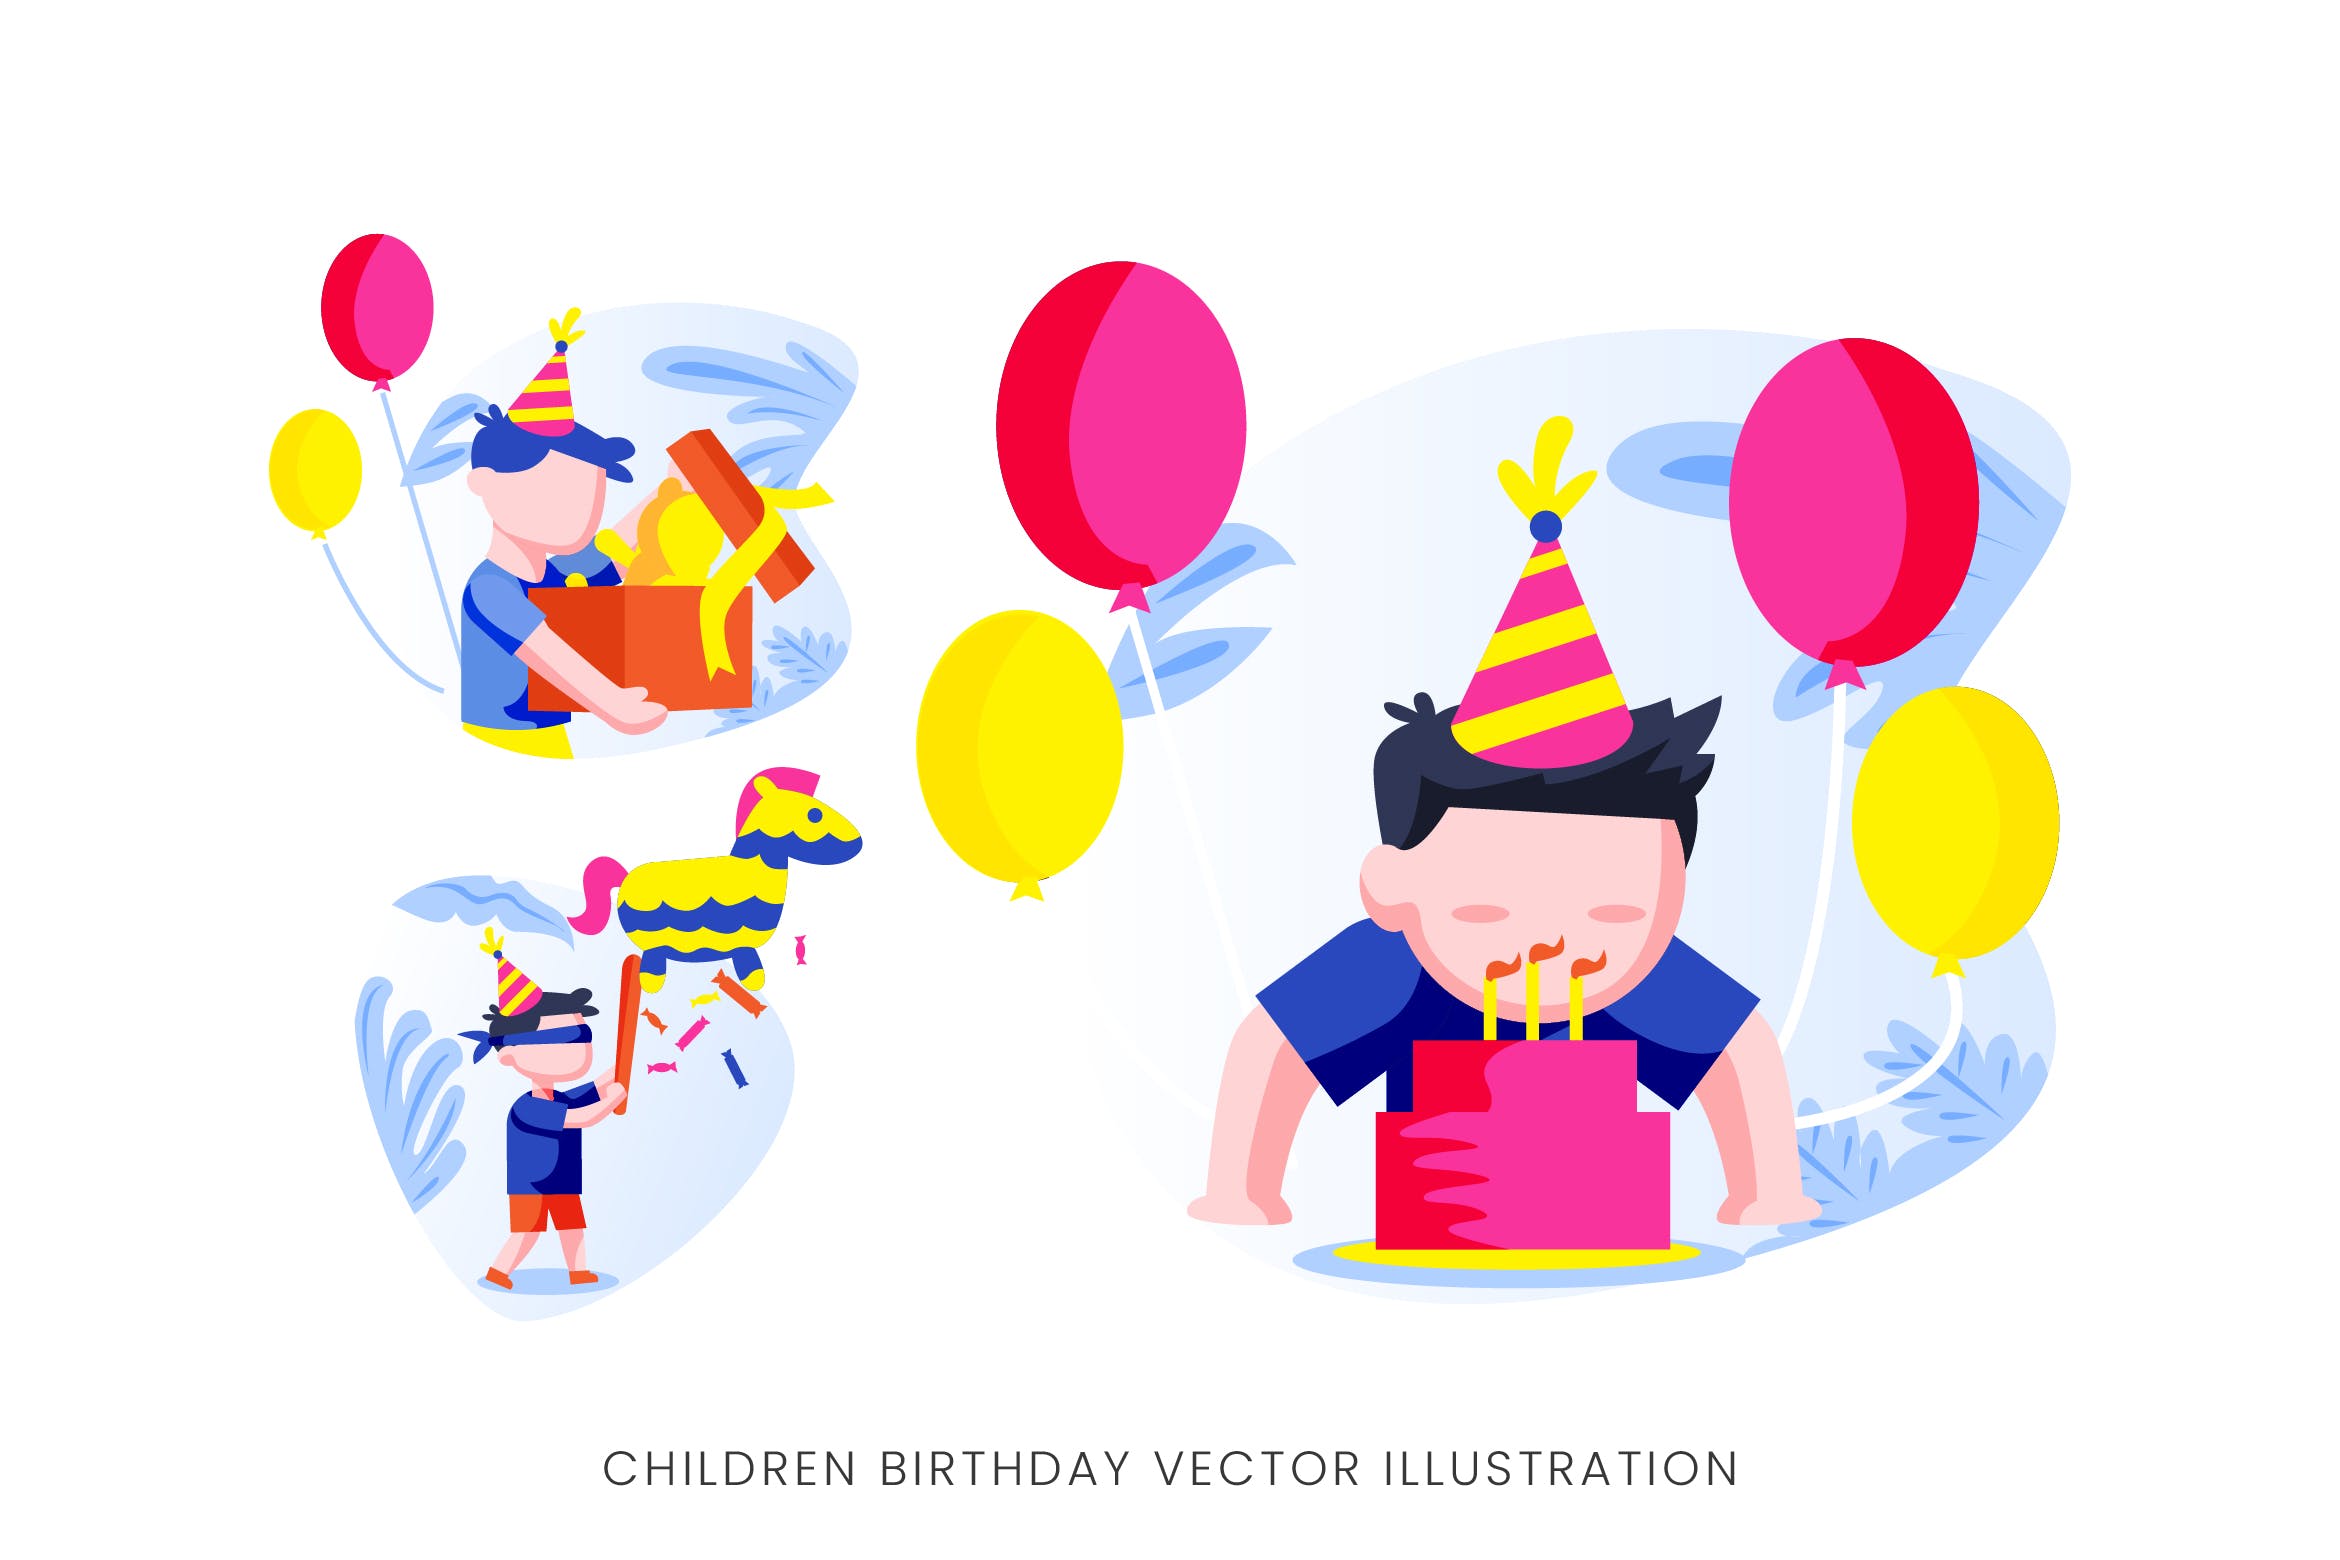 儿童生日派对人物形象16图库精选手绘插画矢量素材 Children Birthday Party Vector Character Set插图